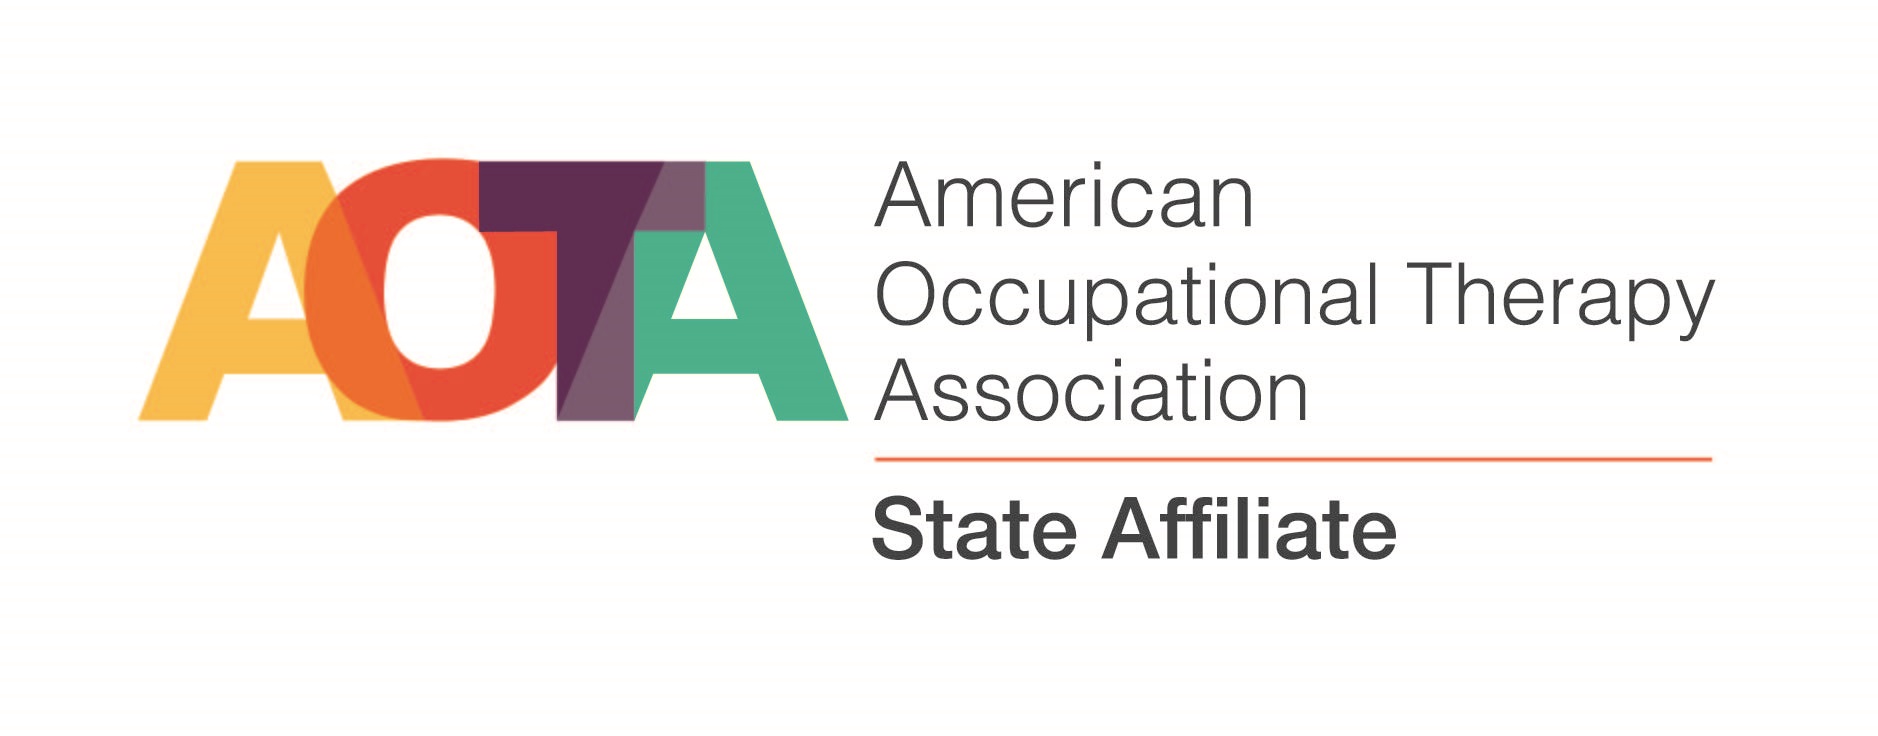 AOTA state affiliate logo